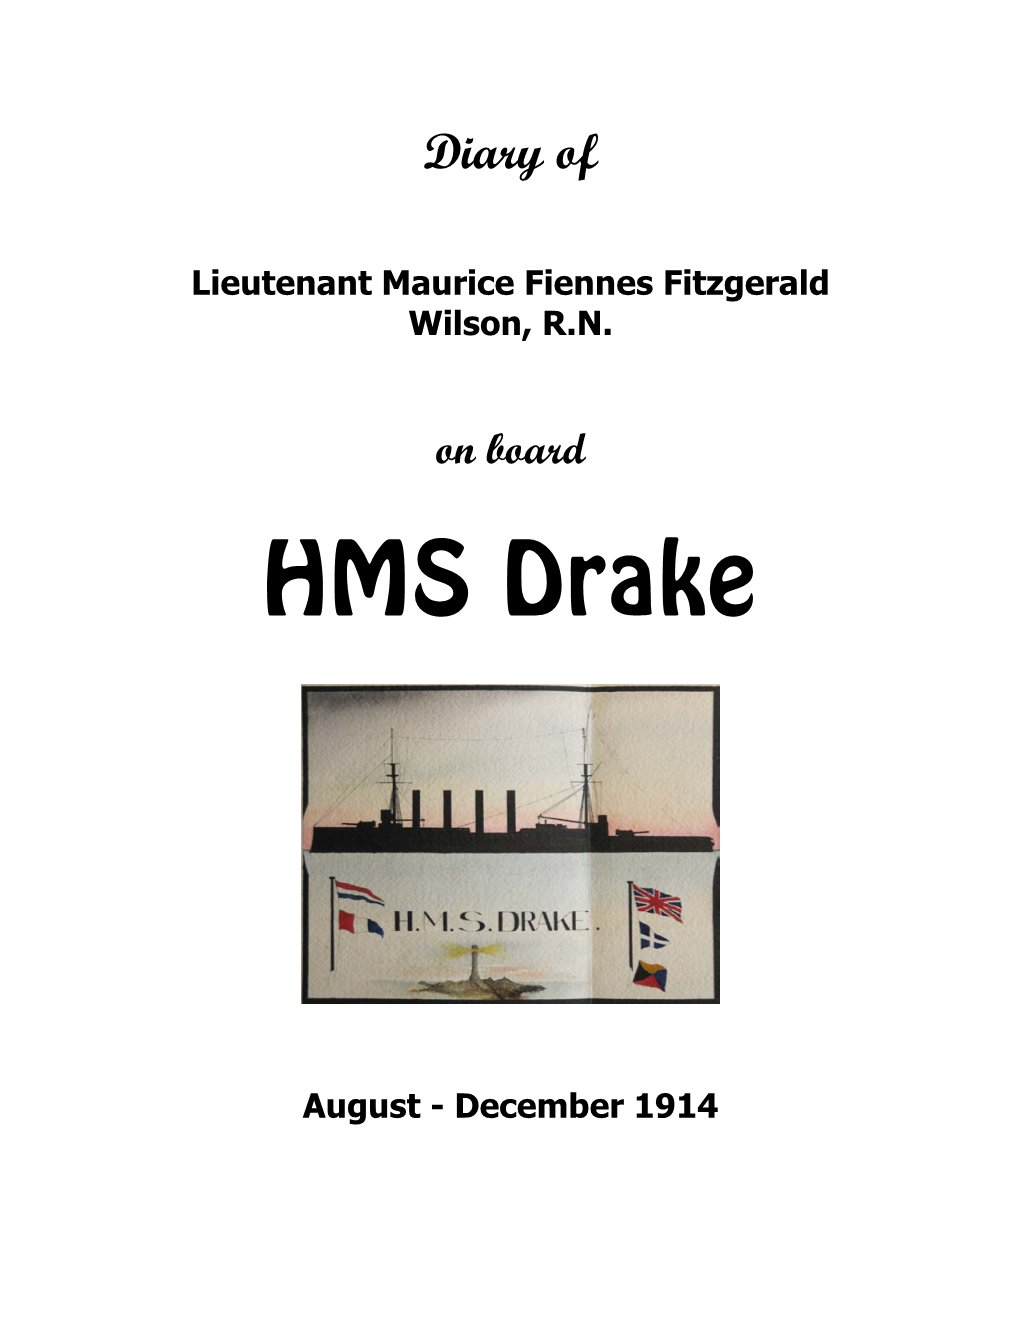 MFFW Diary 1914 HMS Drake.Pdf